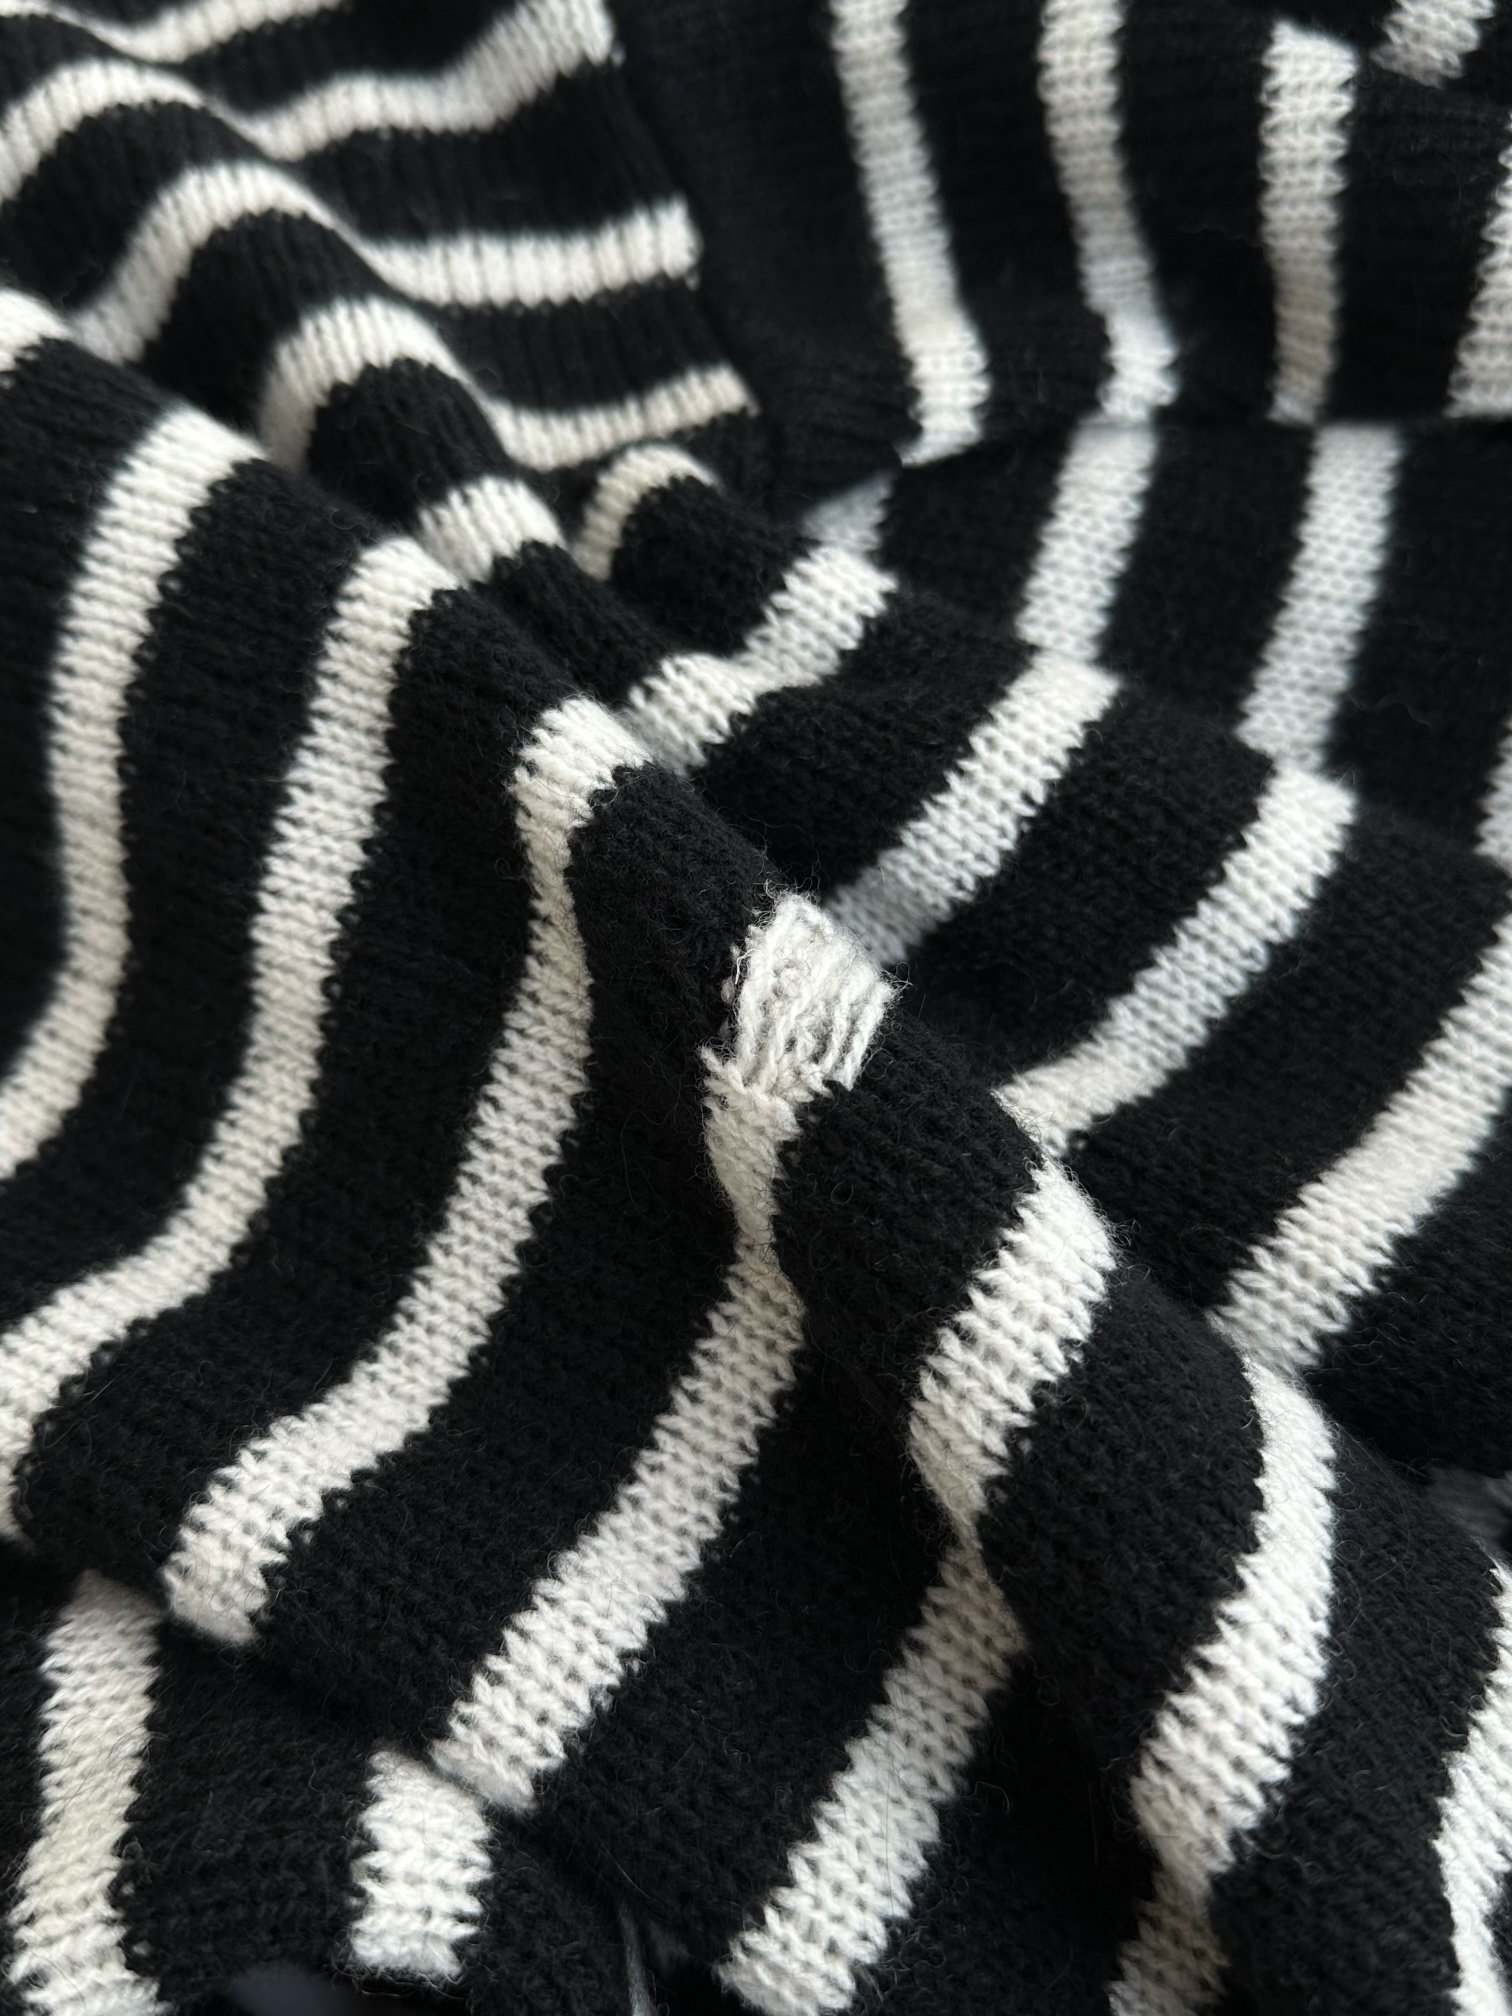 撞色条纹针织毛衣经典圆领设计宽细间隔的条纹黑色米色配色复古文艺的气息清清爽爽不带杂质直筒宽松的版型上身慵